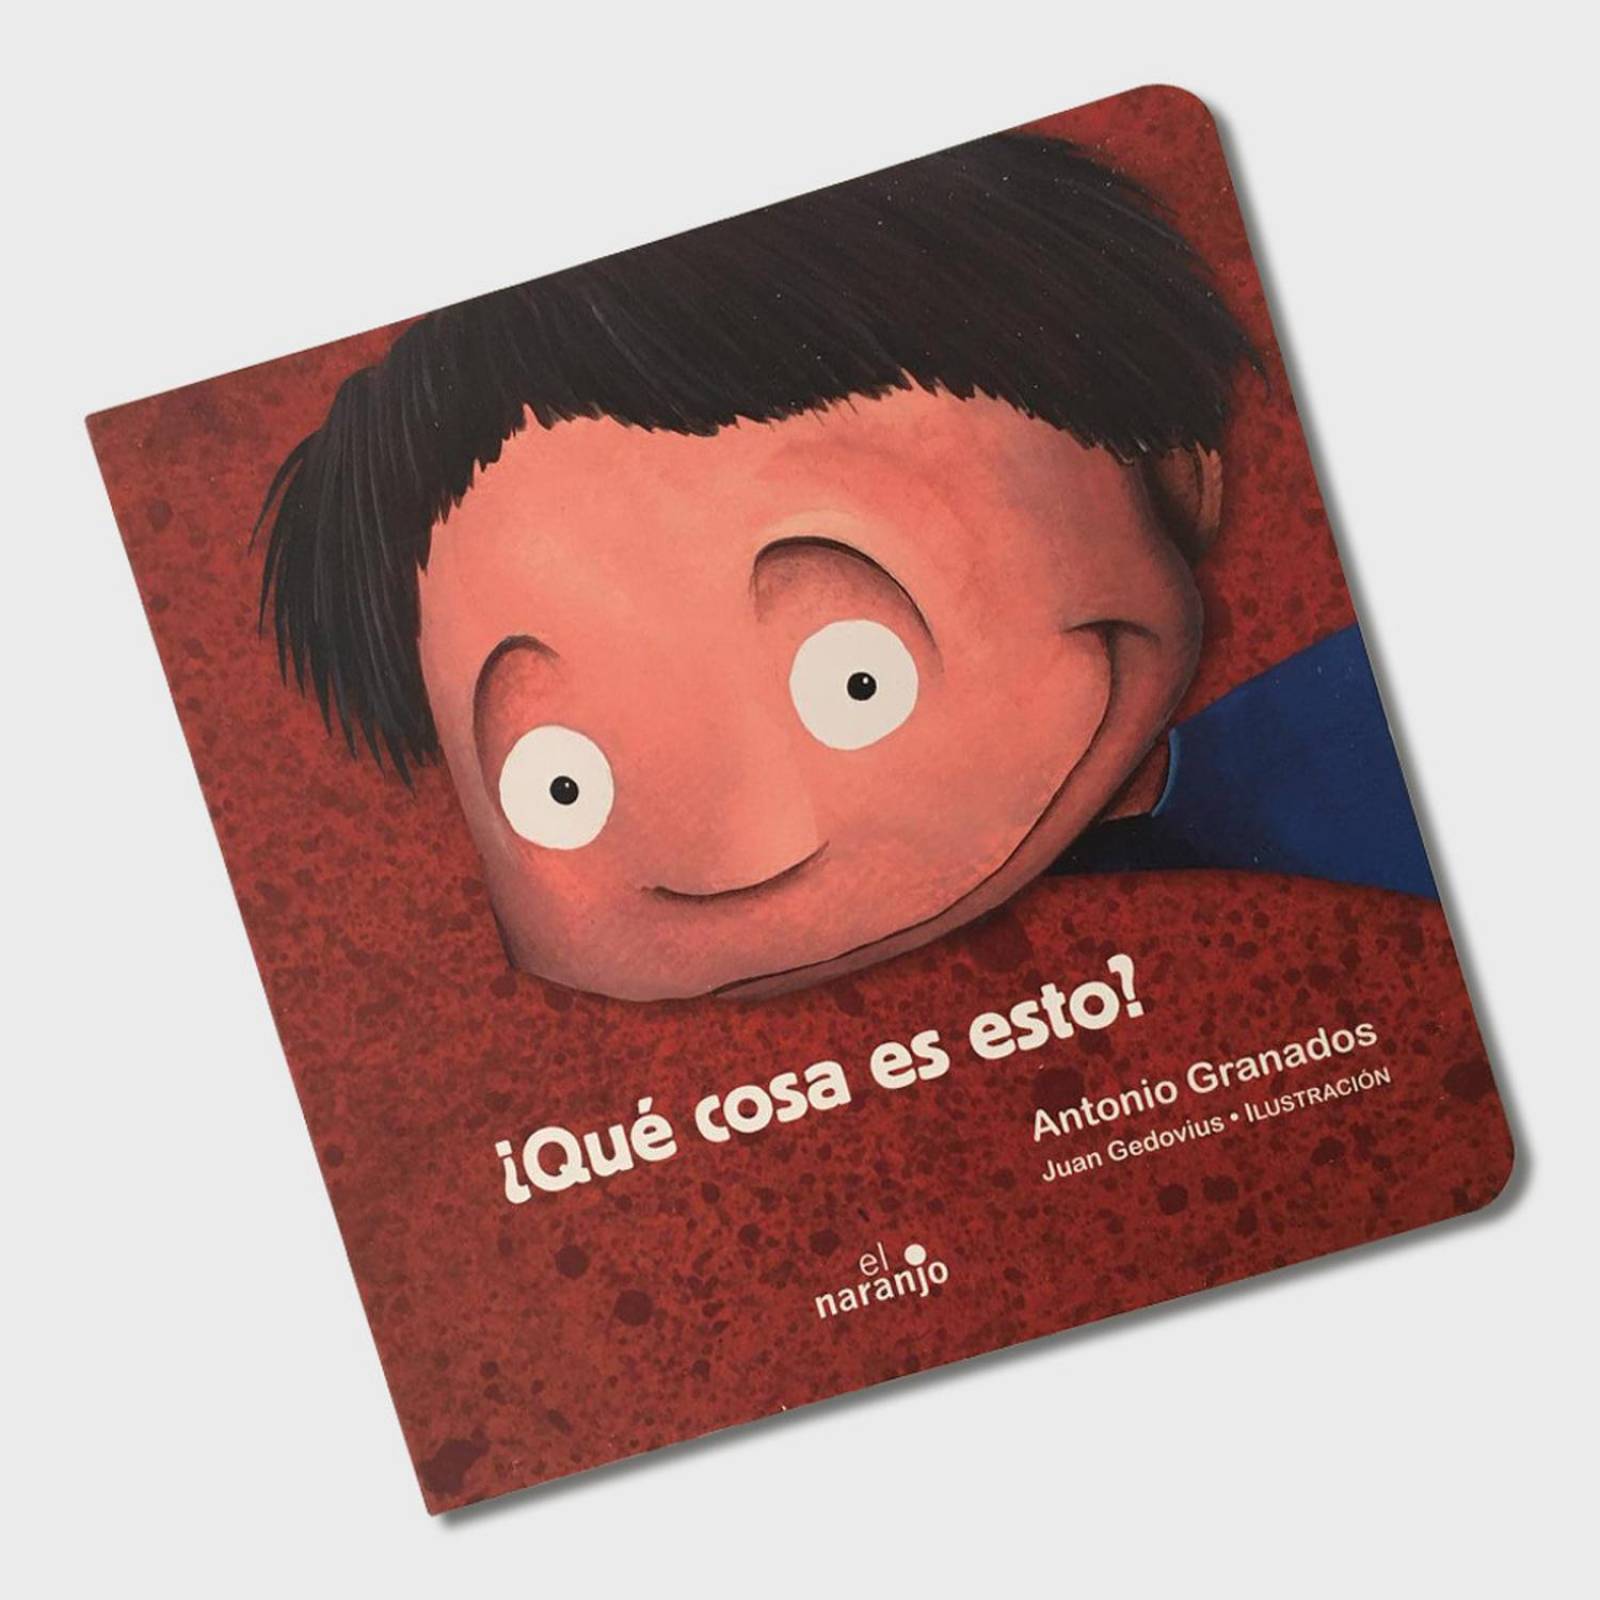 CUENTOS PARA NIÑOS de 2 -6 años: Cuentos infantiles en español con  ilustraciones : Z., Mena: : Libros